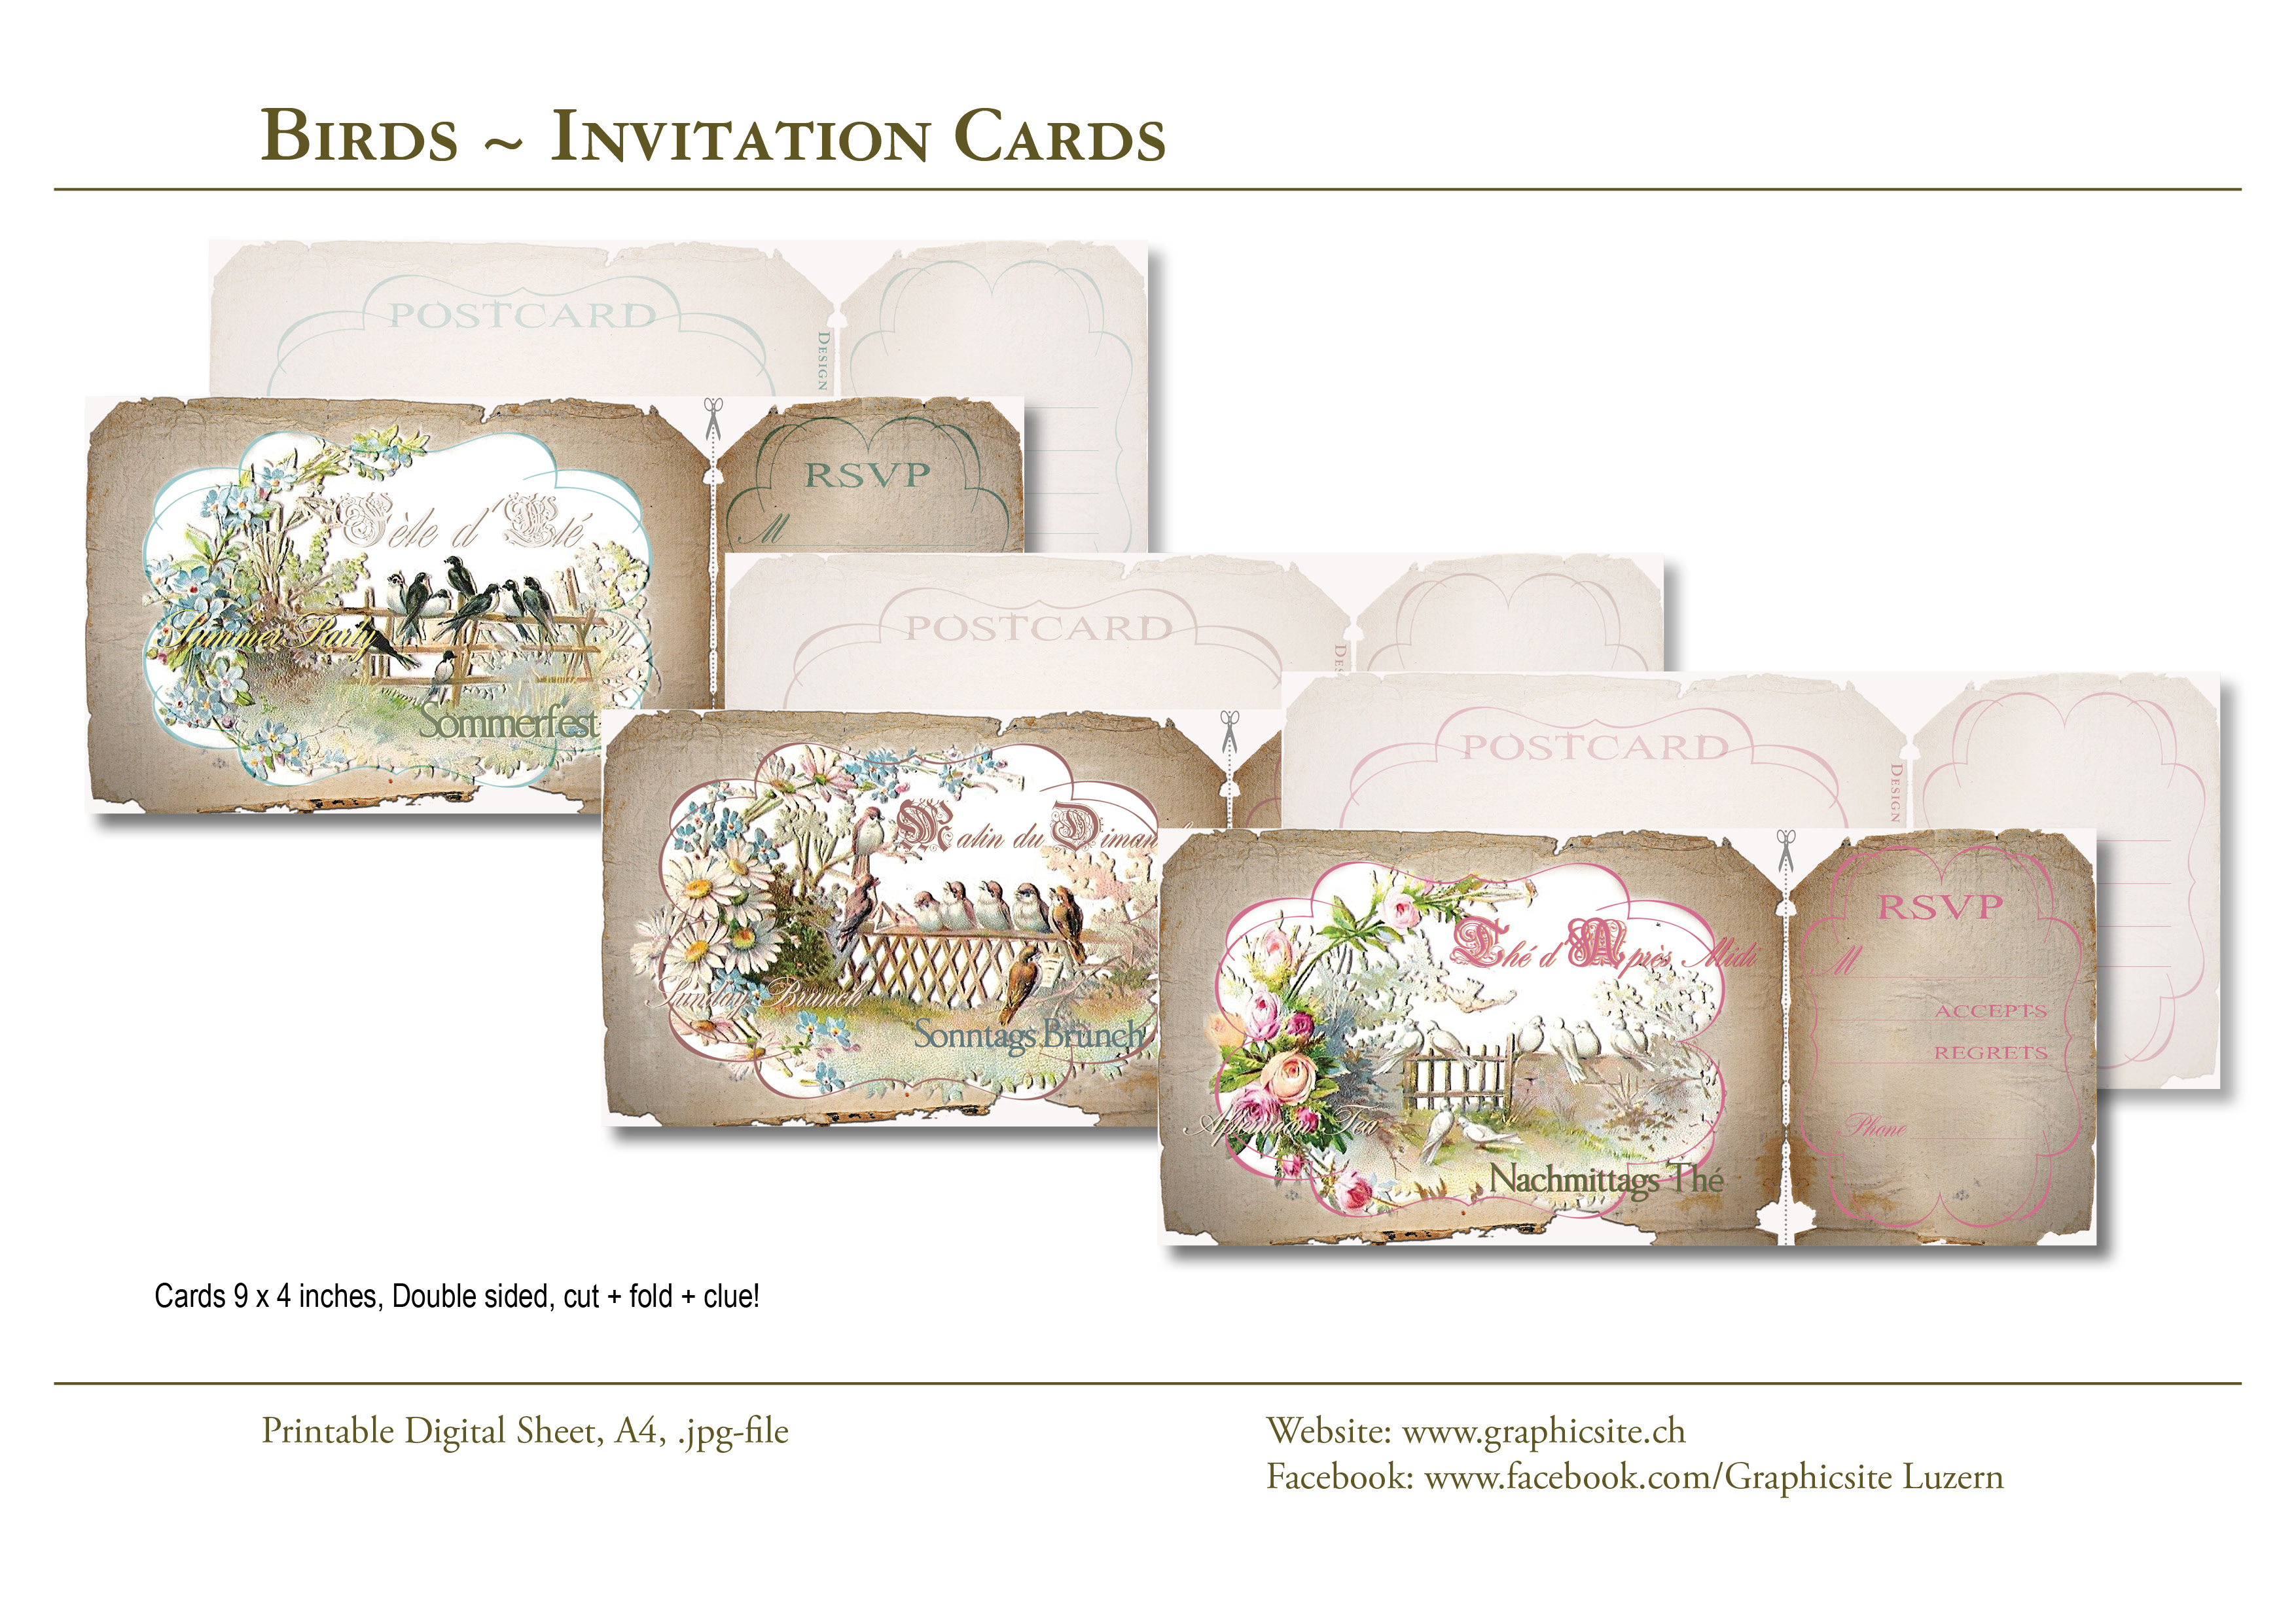 Karten selber drucken - Einladung, Party, Brunch - Birds Invitation Cards